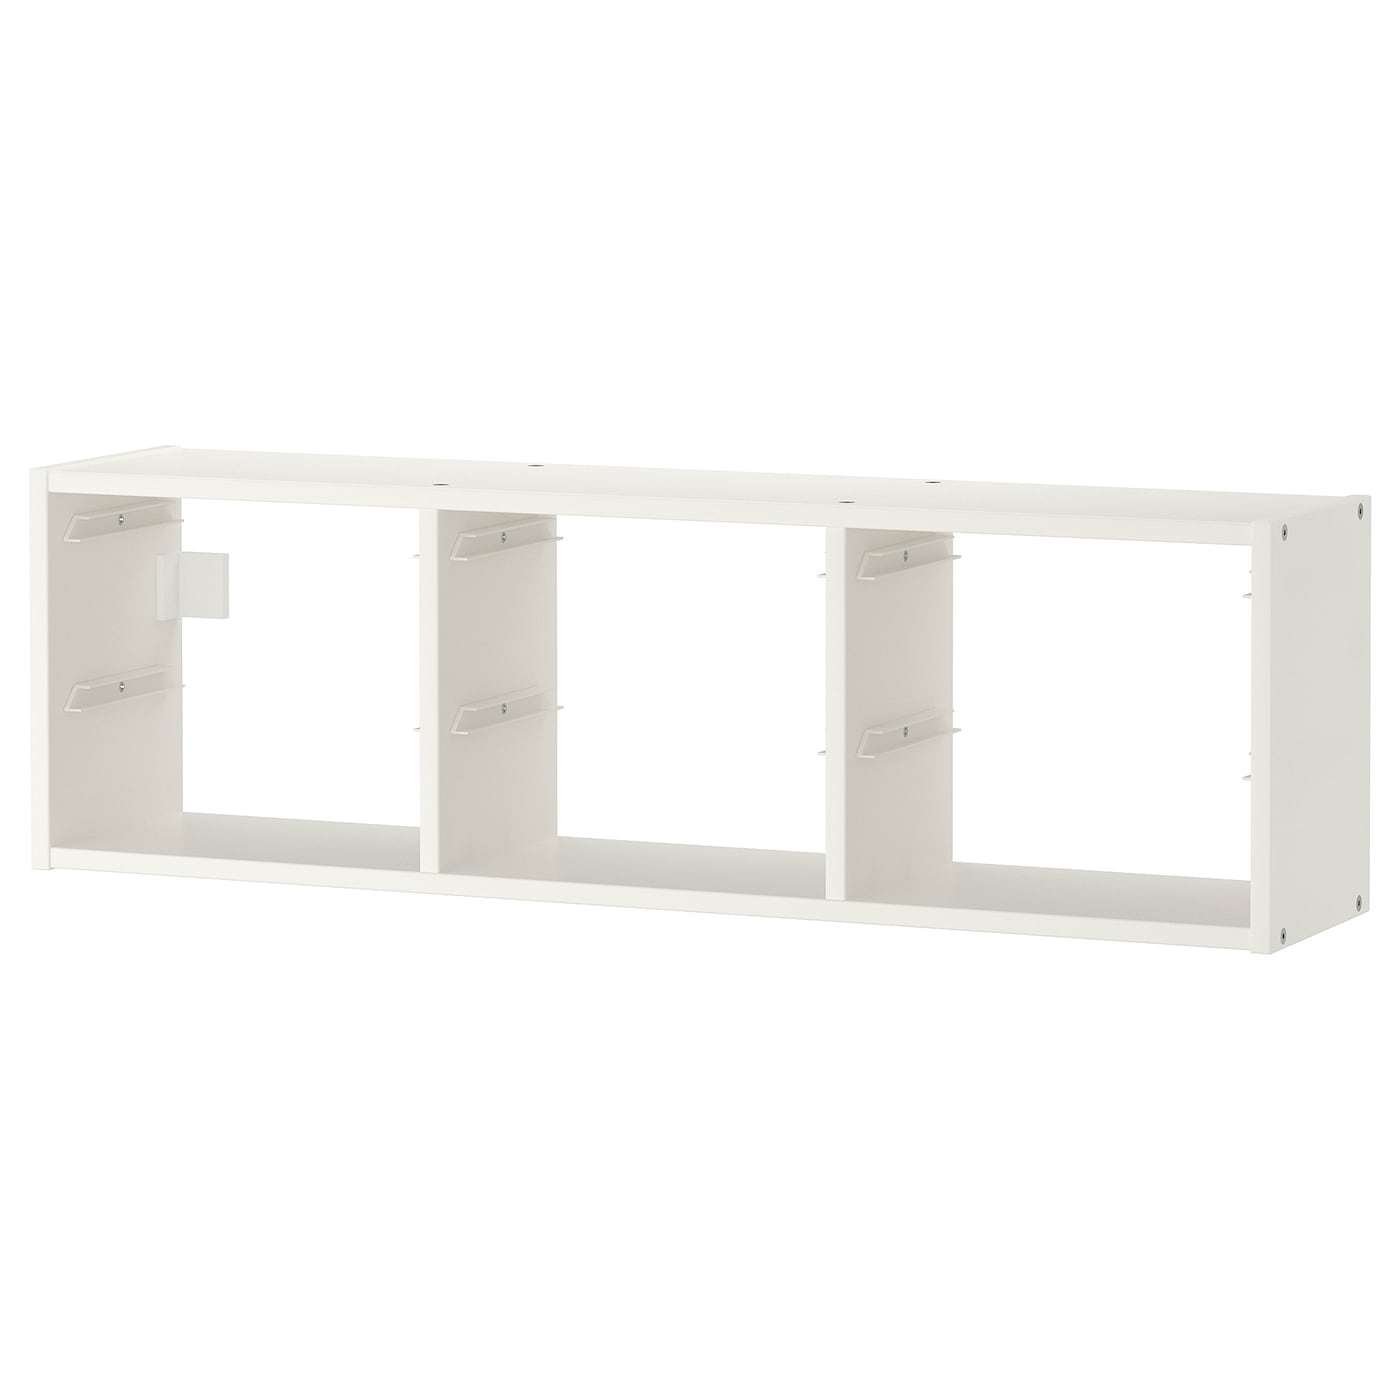 Каркас стеллажа - IKEA TROFAST, 99х21х30 см, белый, ТРУФАСТ ИКЕА